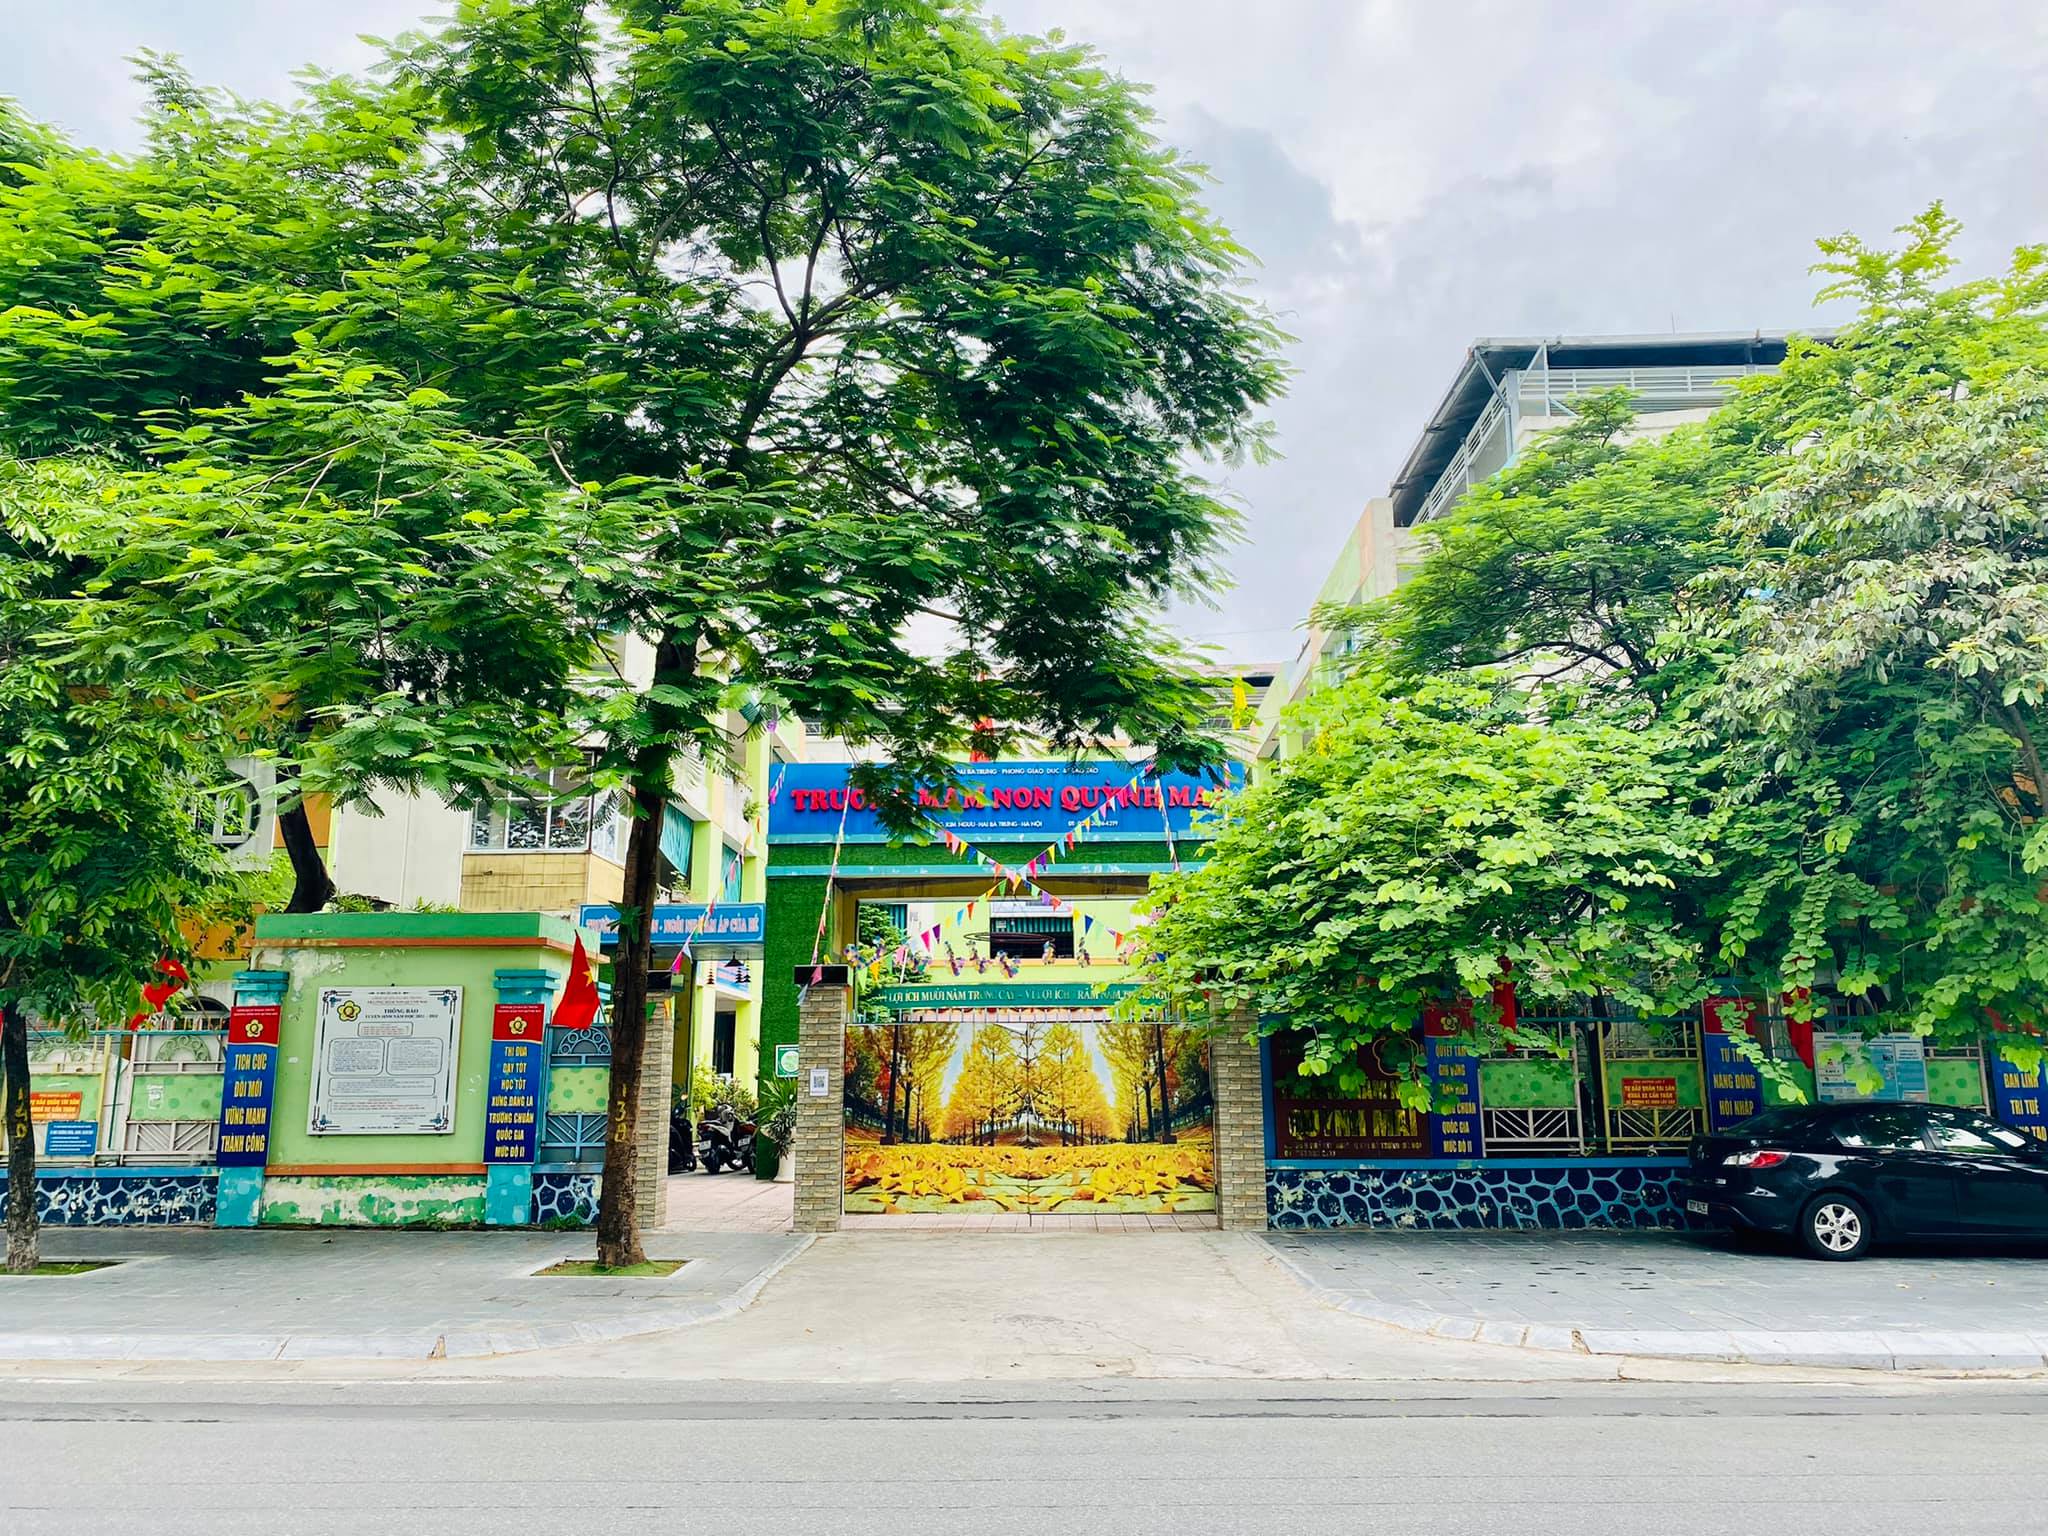 Trường Mầm Non Quỳnh Mai (Quynh Mai kindergarten) ảnh 1